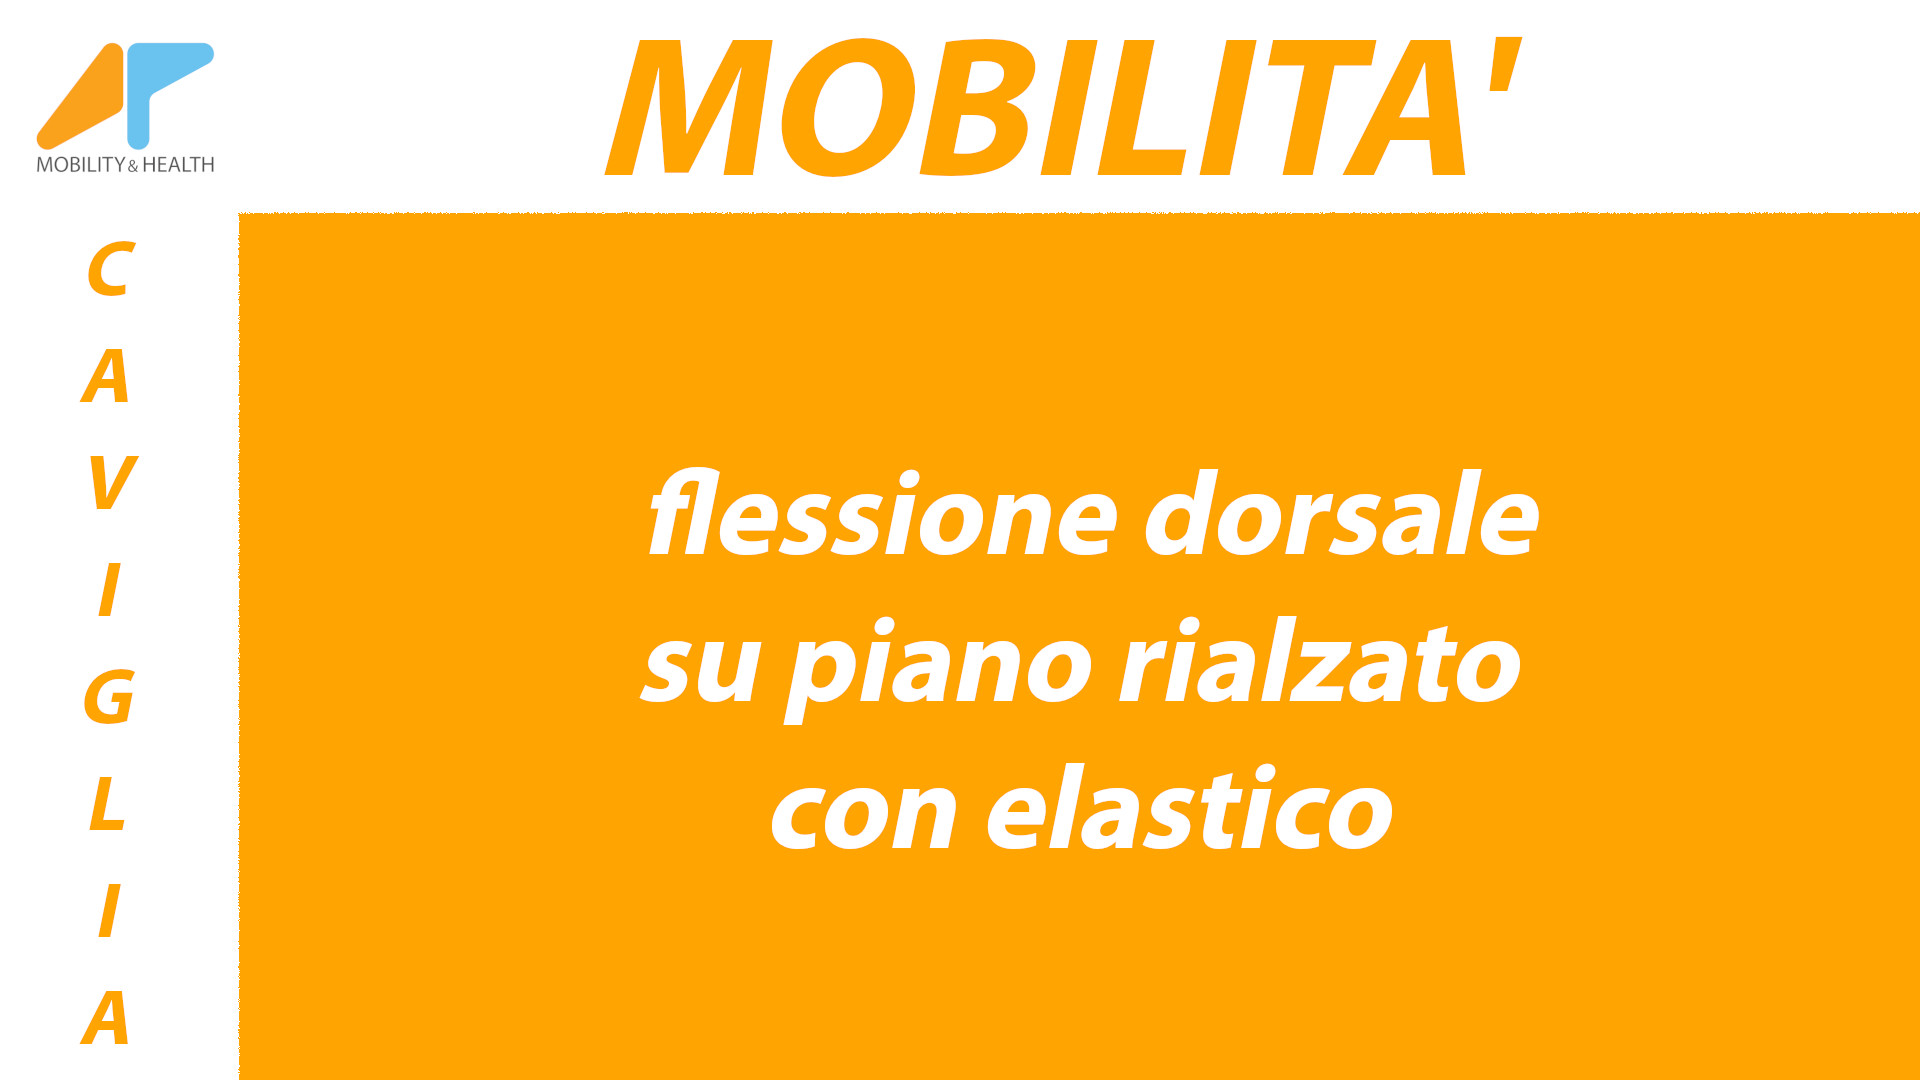 Mobilita-caviglia-flessione-dorsale-piano-rialzato-elastico Alessandro Paoluzzi Fisioterapista Udine